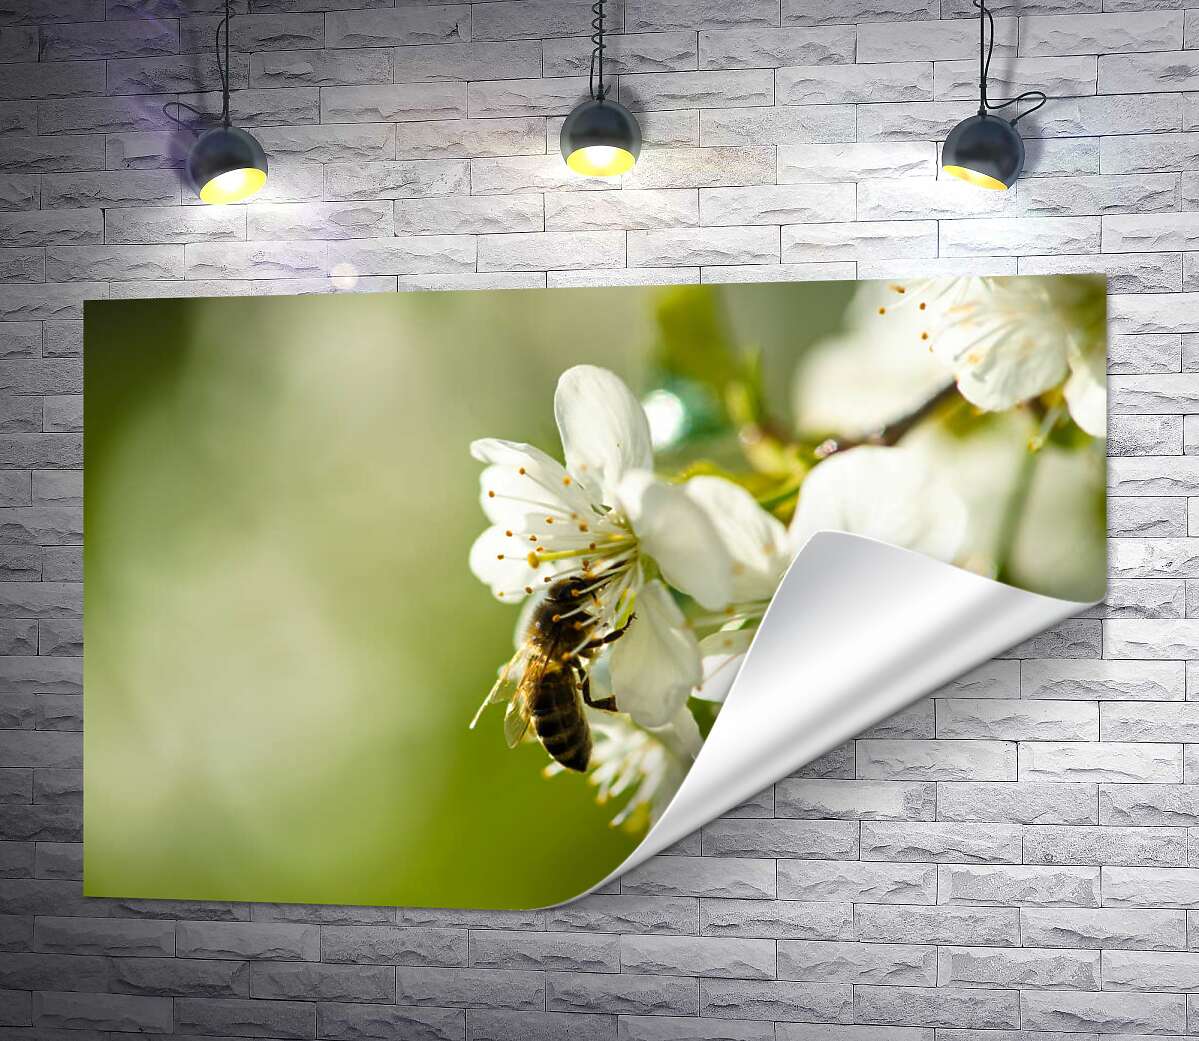 друк Маленька бджола збирає пилок на білій квітці яблуні